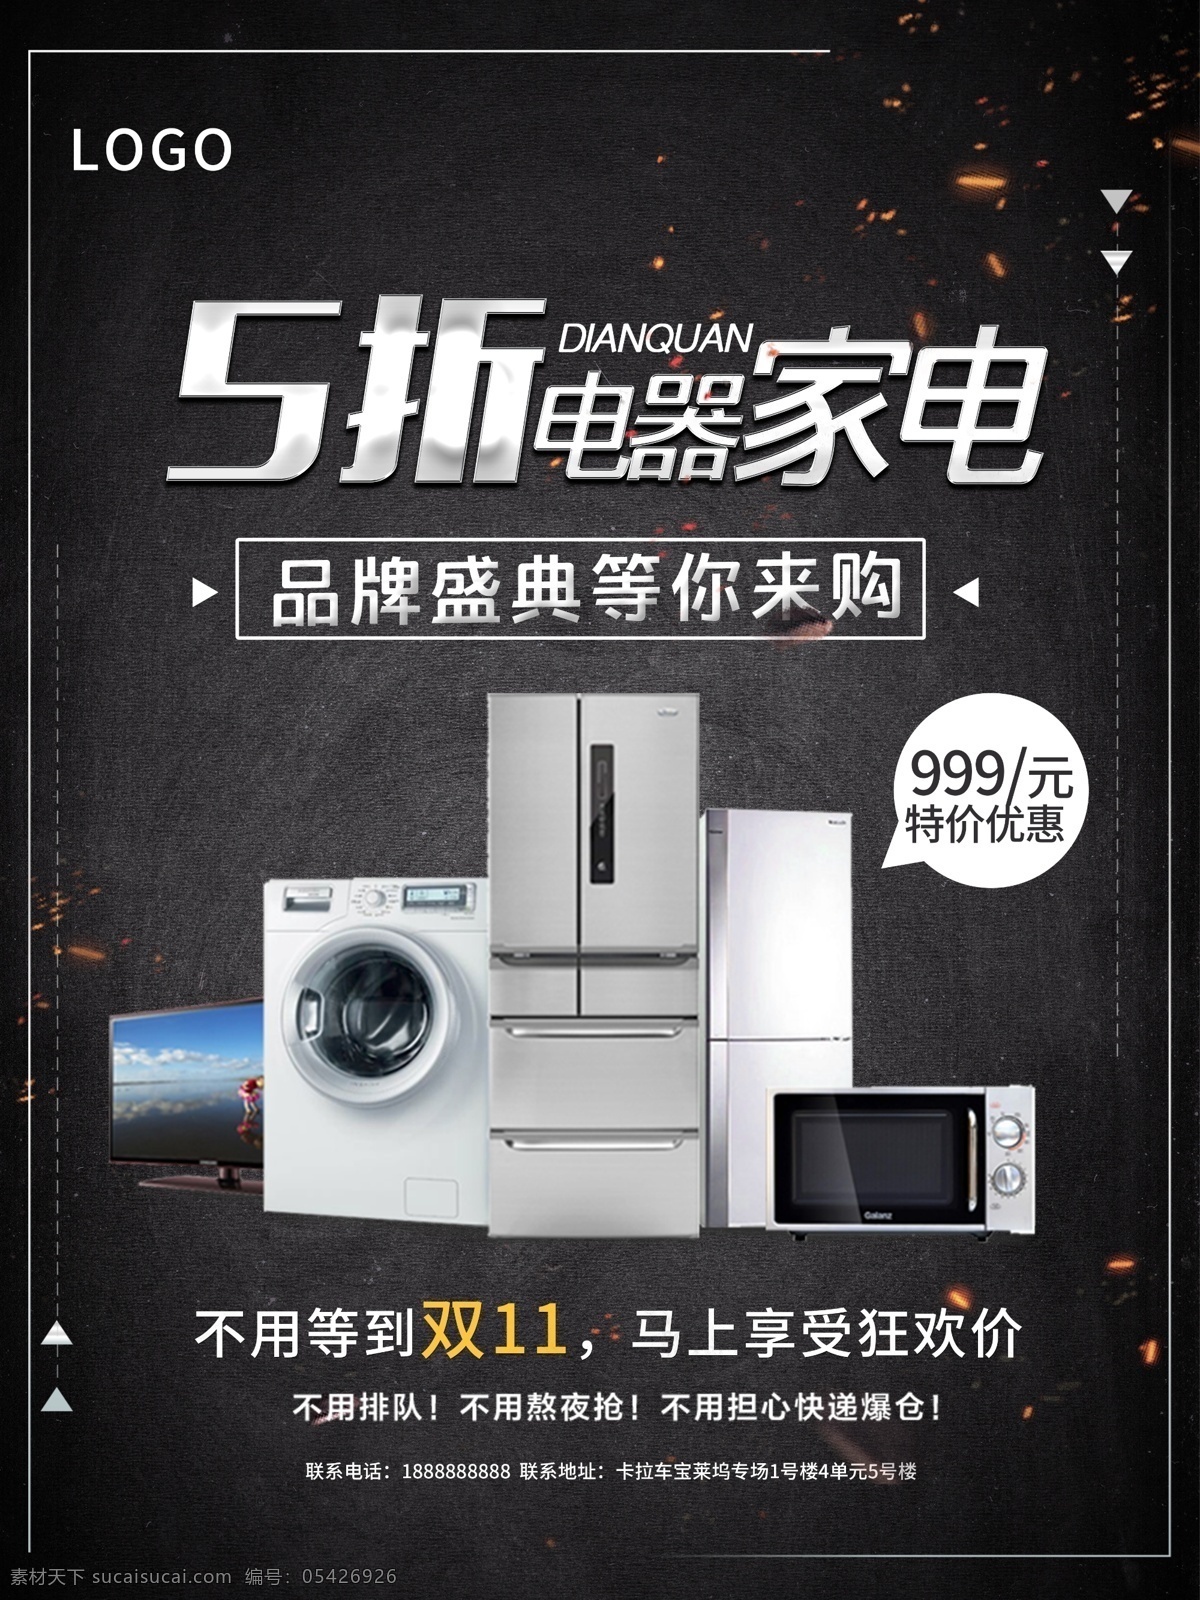 双 家电 大 促销 电视 微波炉 洗衣机 电冰箱 双11特卖 品牌盛典